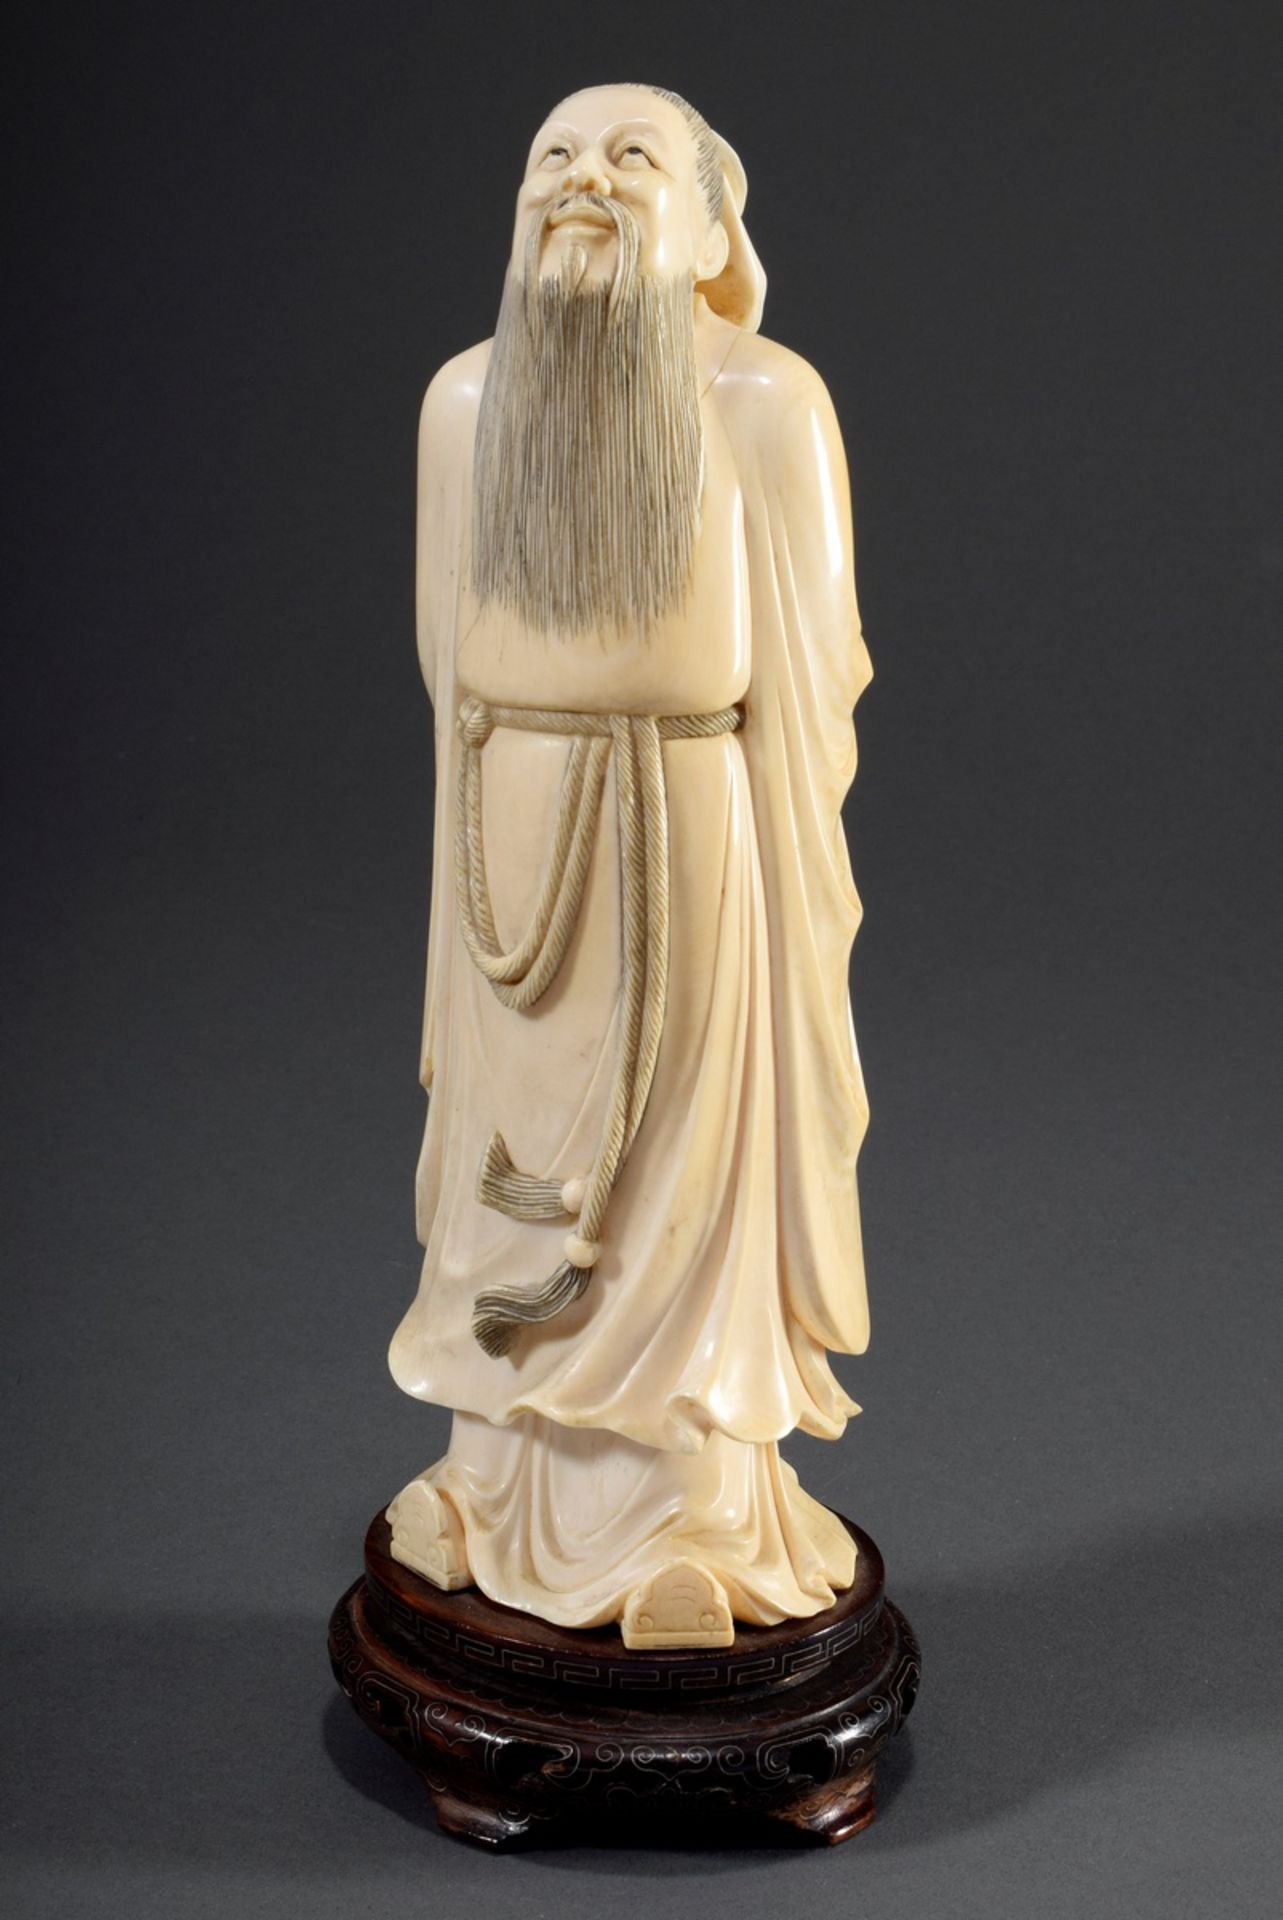 Chinesische Elfenbein Schnitzerei "Konfuzius, de | Chinese ivory carving "Confucius, looking up to - Bild 2 aus 9